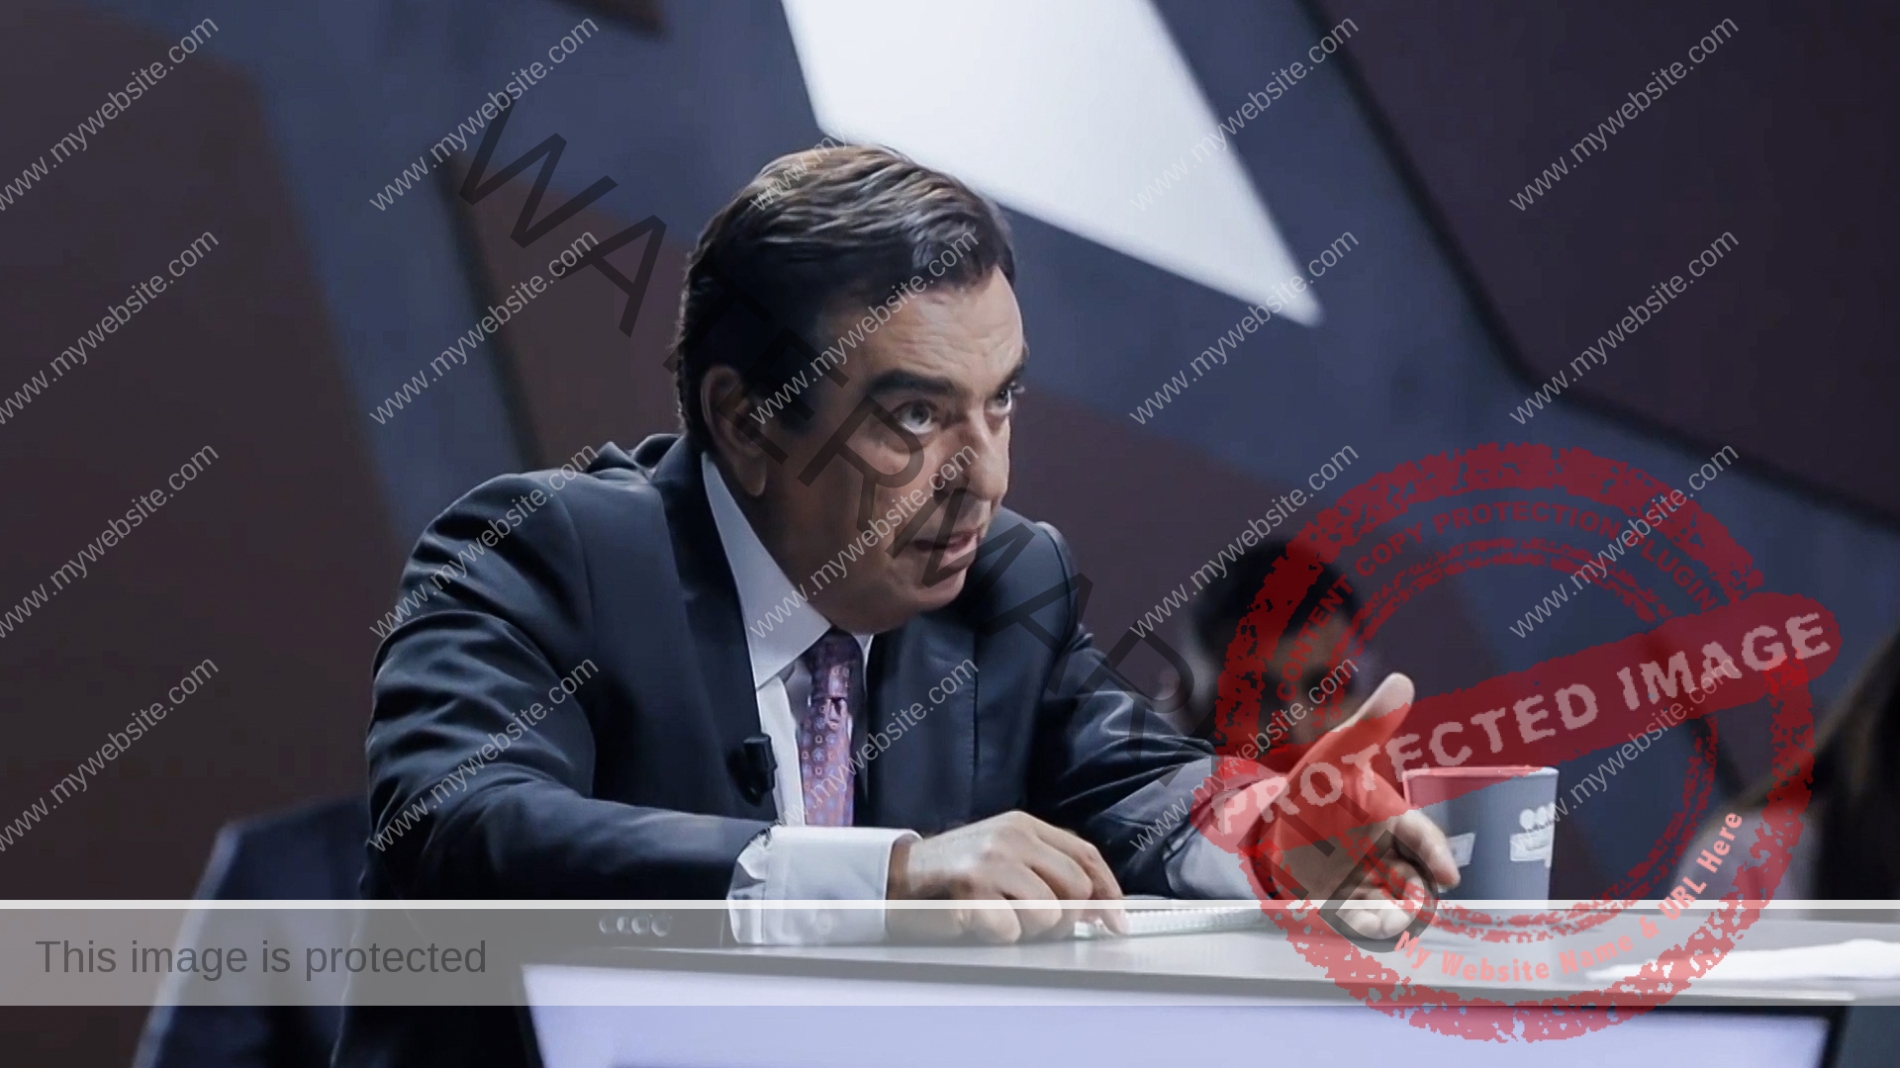 "عاجل" إستقالة جورج قرداحي من منصبه كـ وزير إعلام بالحكومة اللبنانية